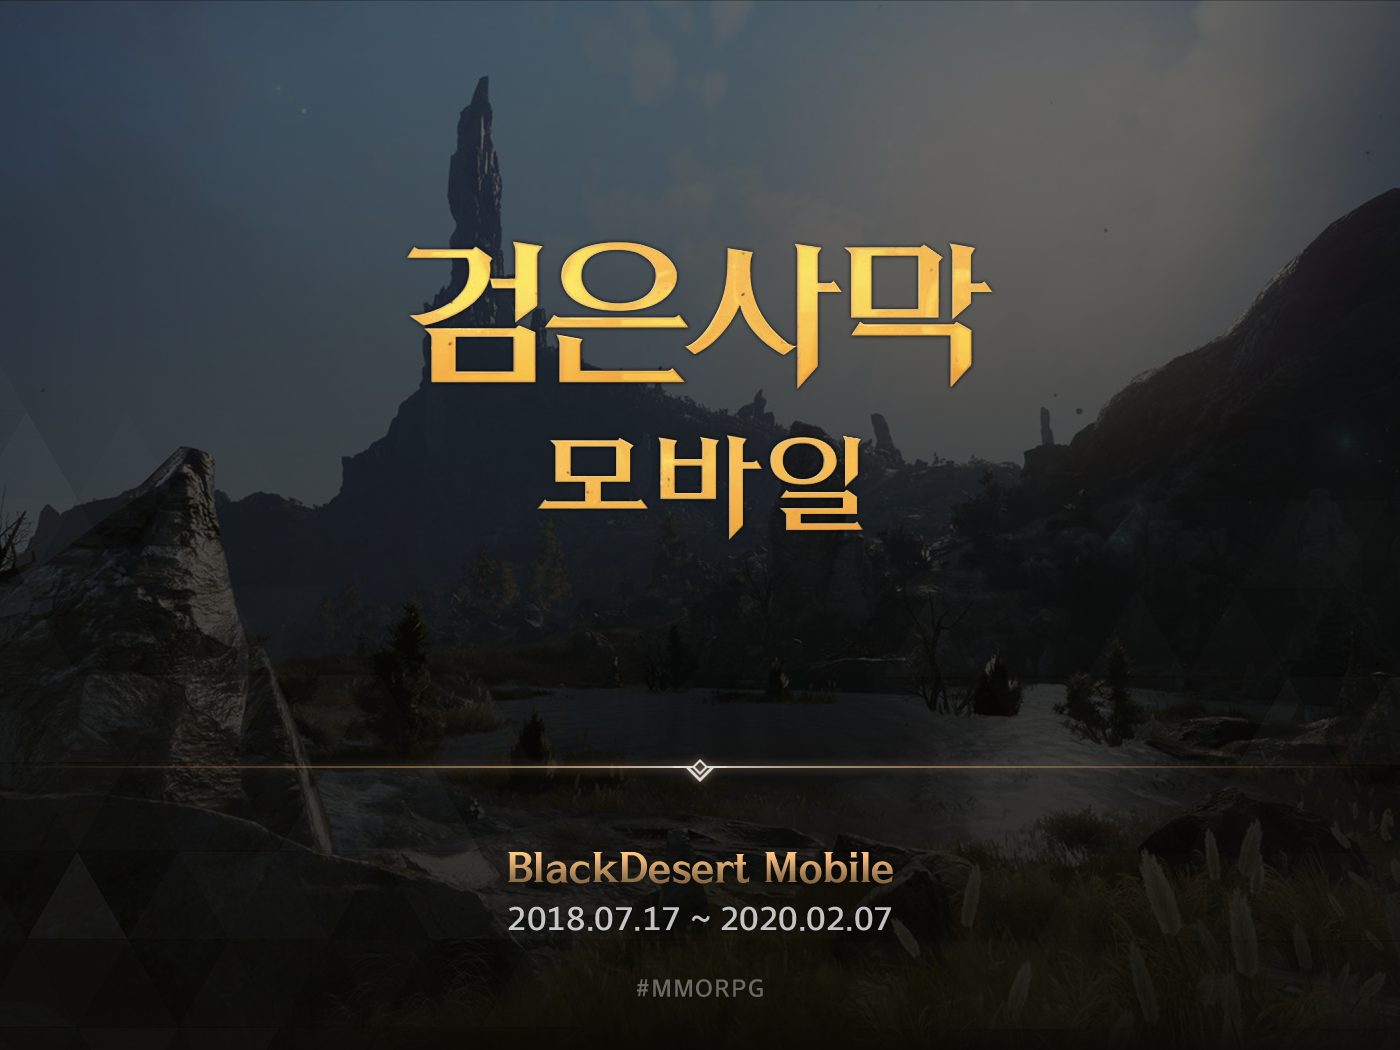 blackdesert blackdesert mobile game mmorpg mobile mobilegame pearlabyss rpg UI ux